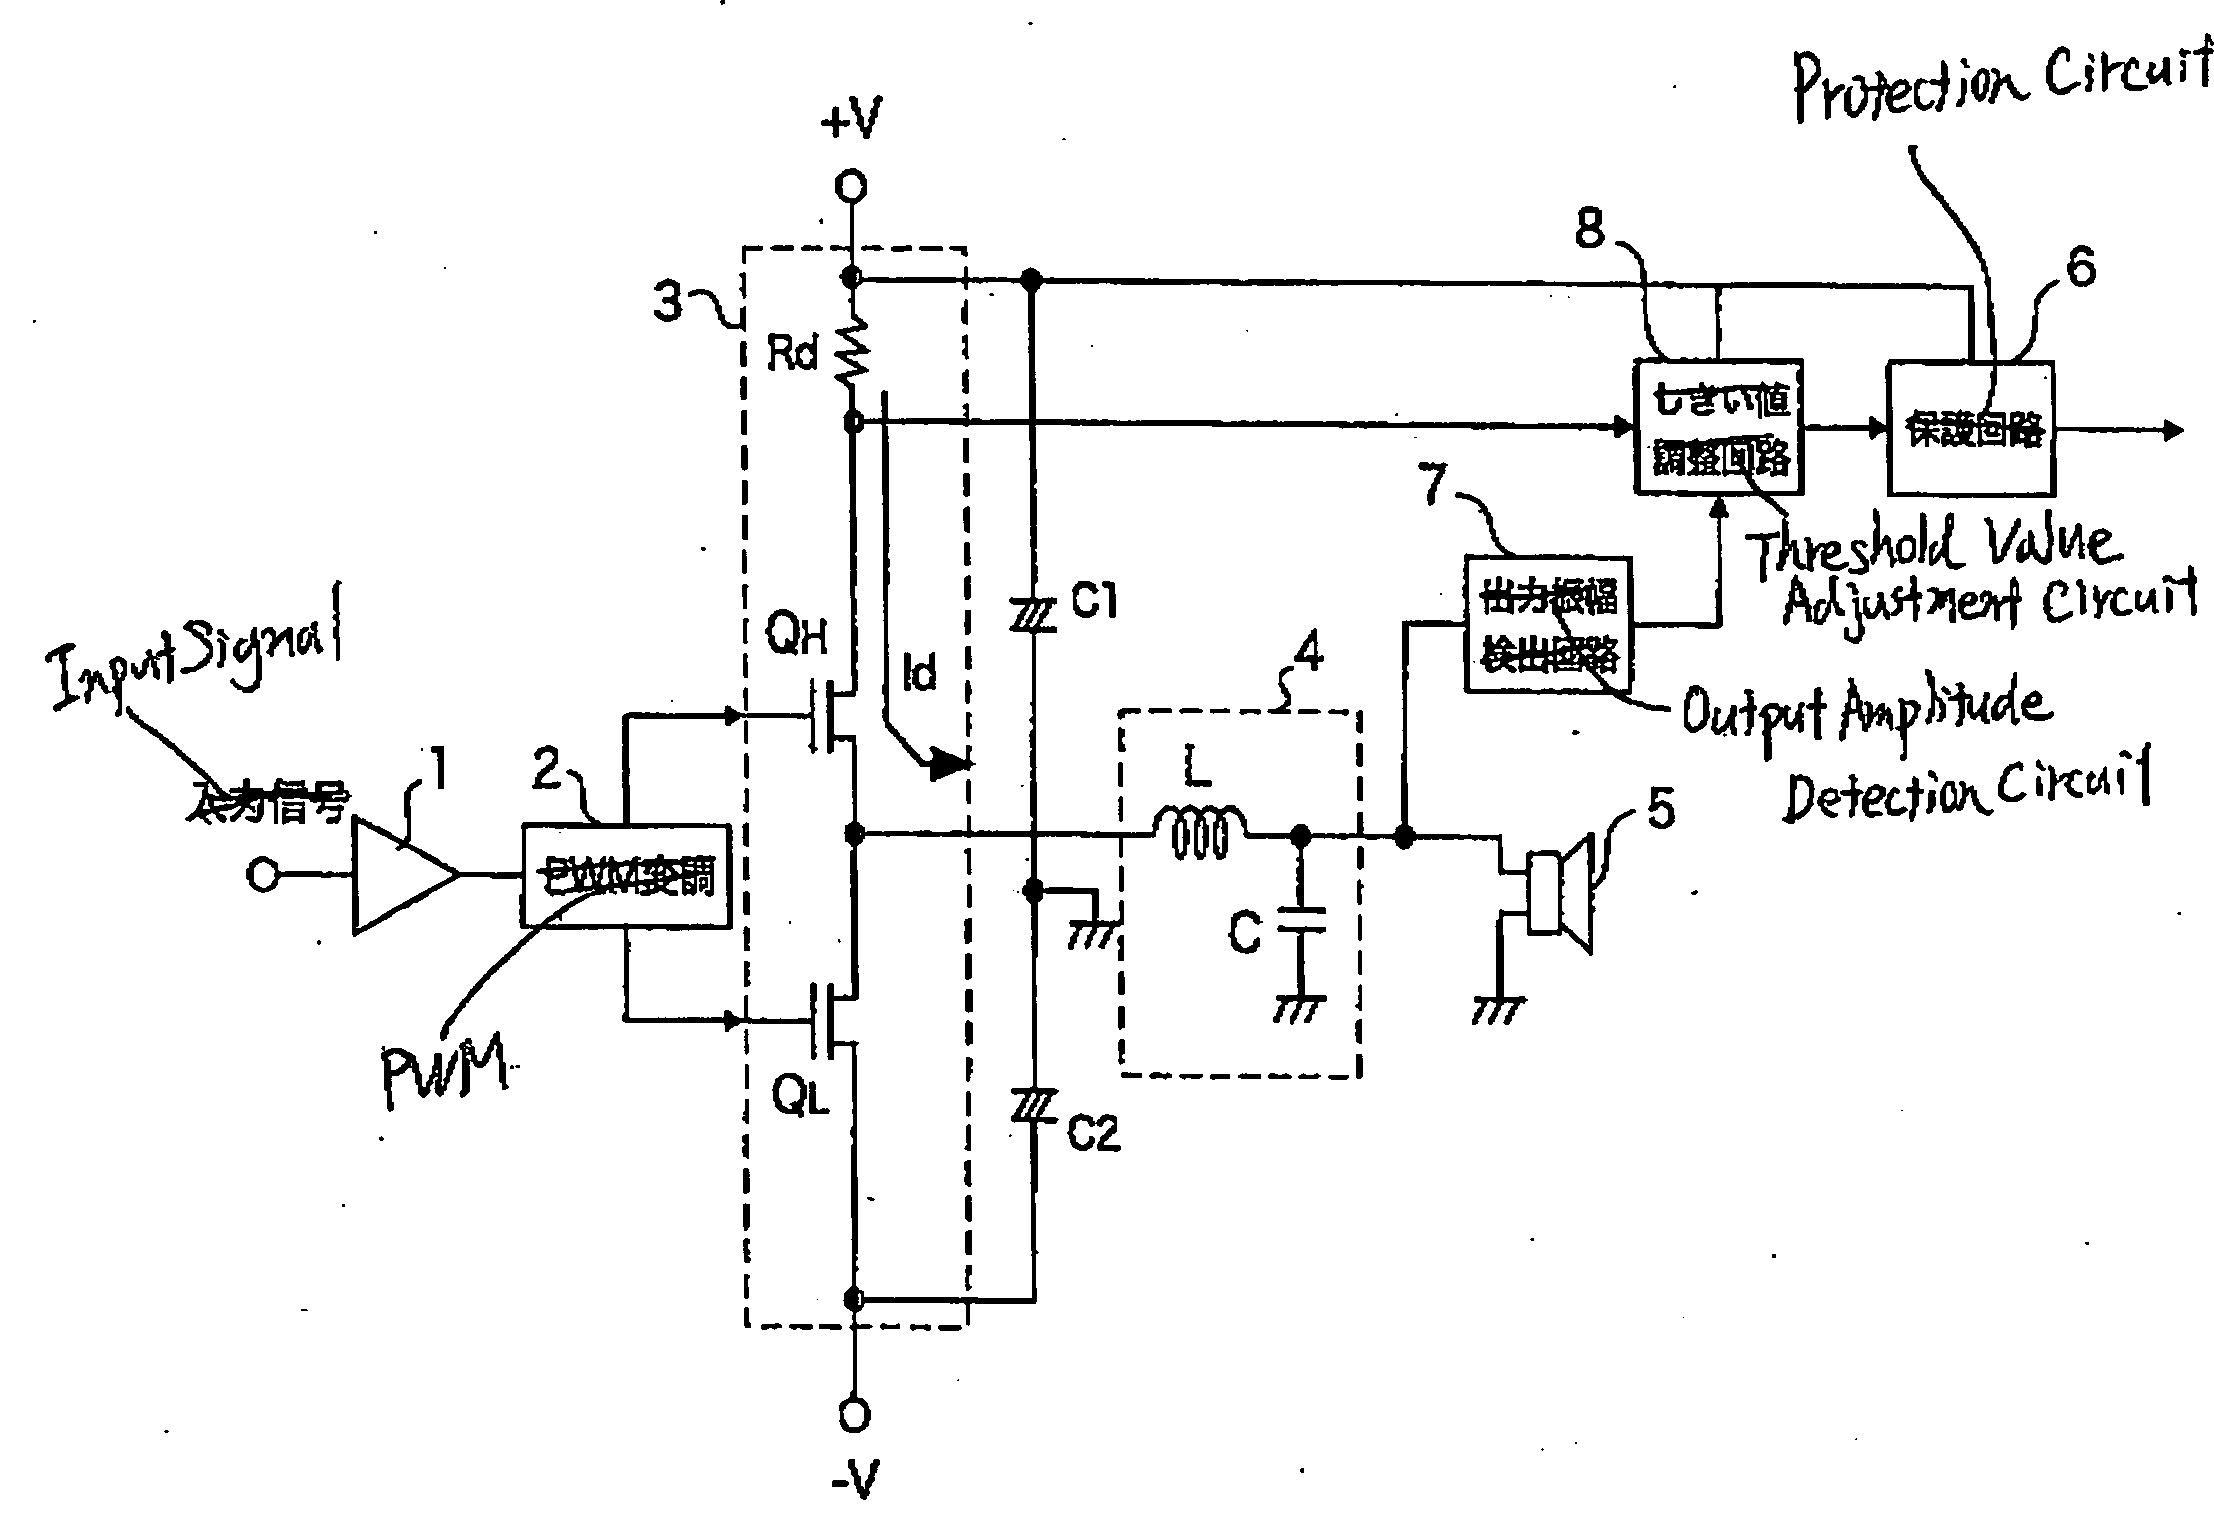 Digital amplifier